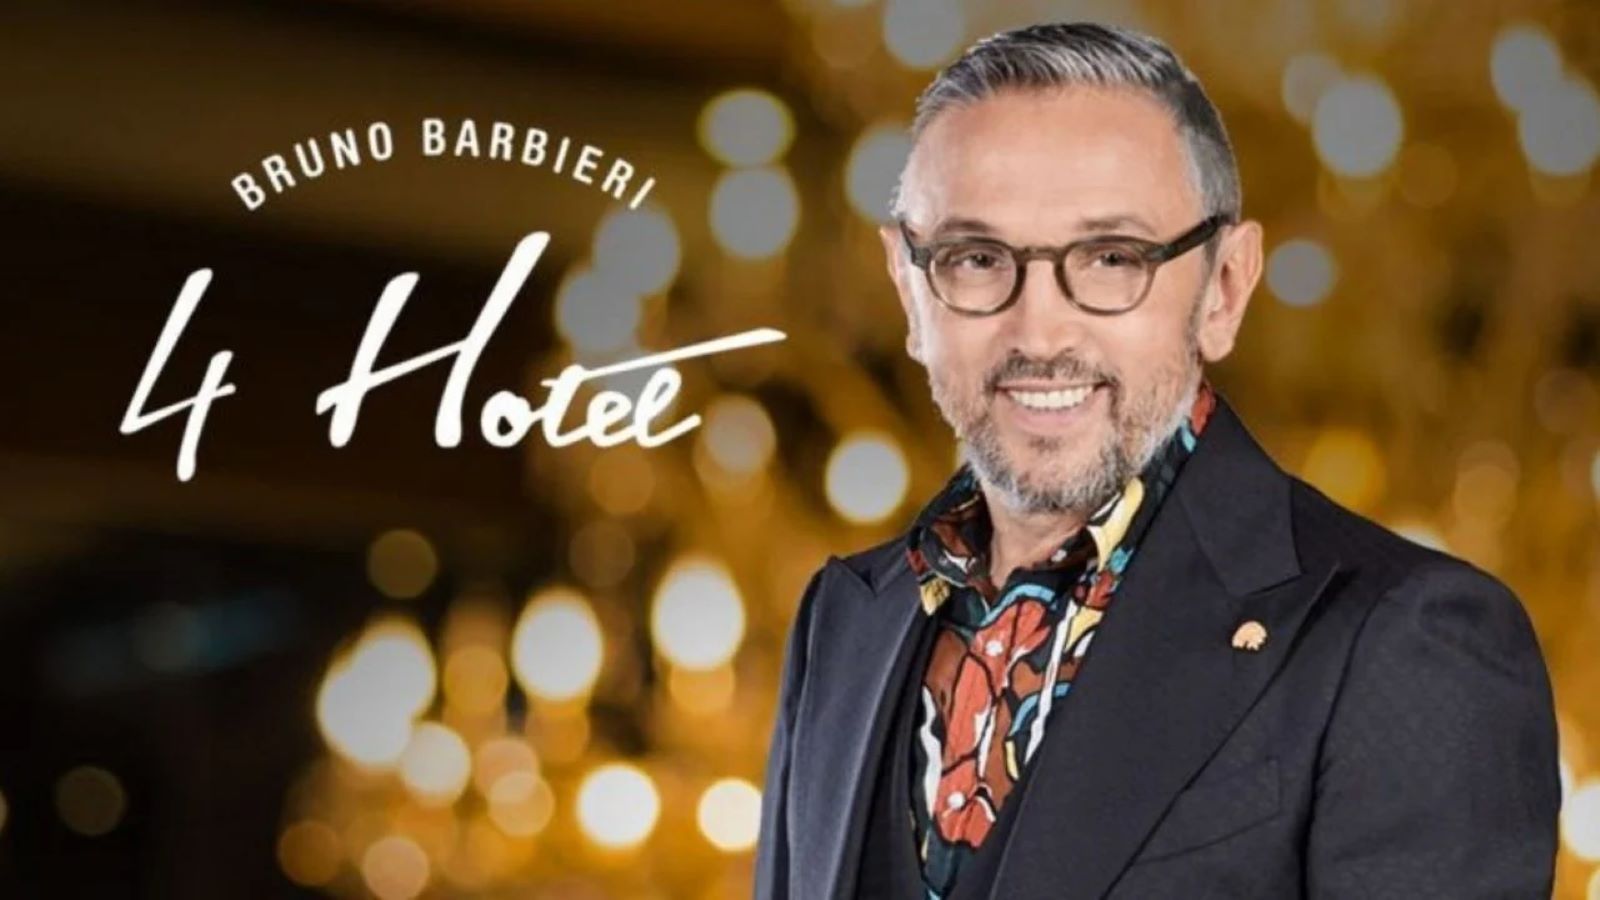 Bruno Barbieri 4 Hotel  su Sky: anticipazioni e tappe della nuova stagione, stasera si vola a Marrakech